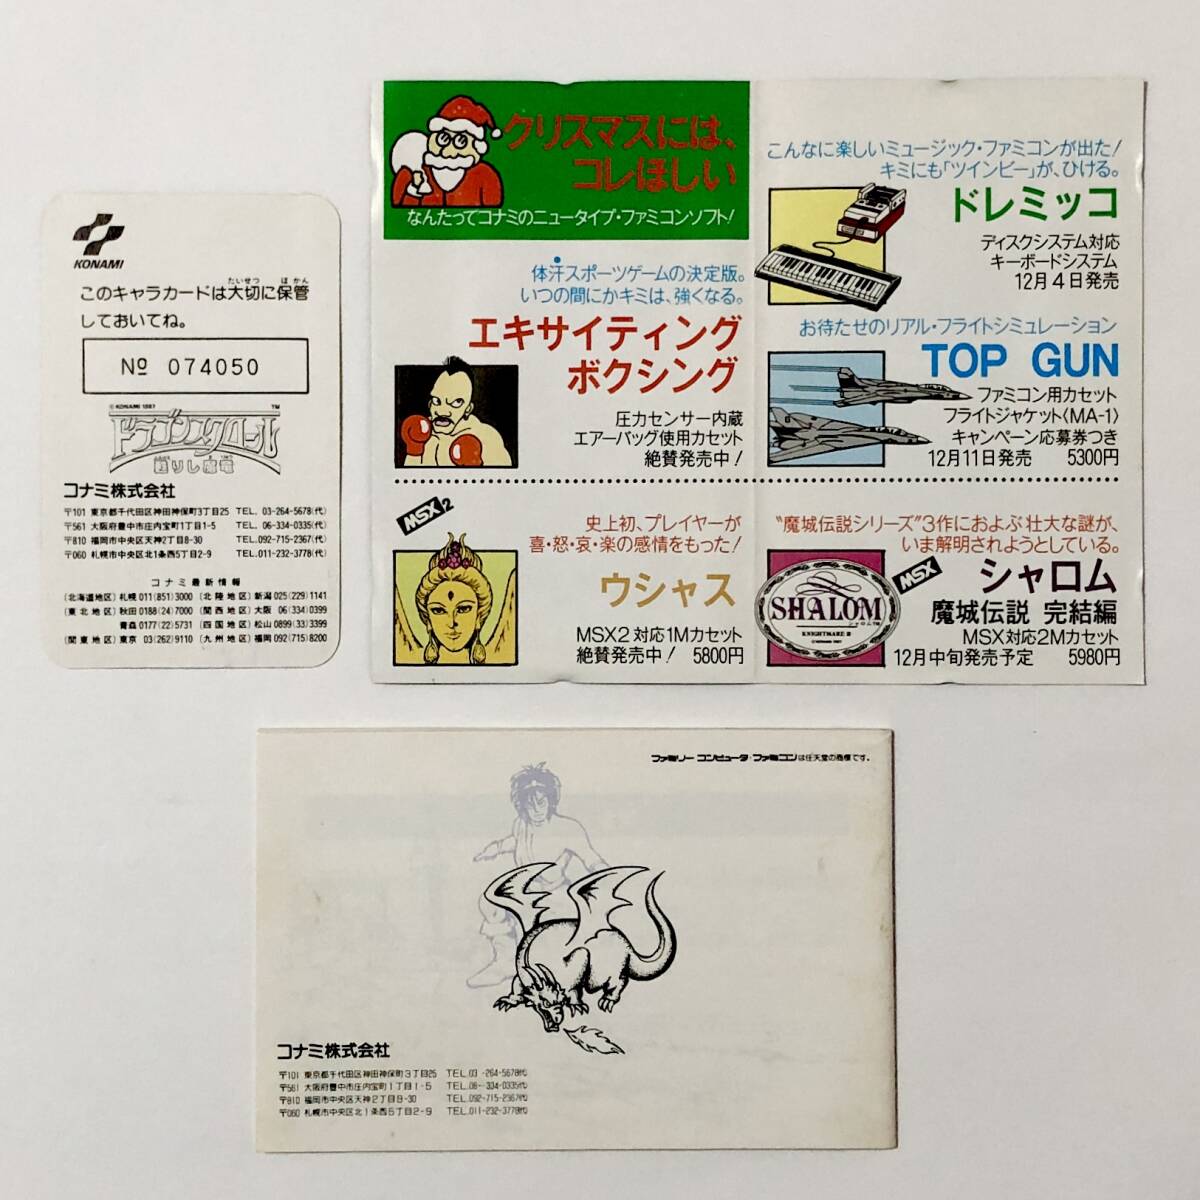 ファミコン ドラゴンスクロール 甦りし魔竜 箱説付き カード付き 痛みあり コナミ Nintendo Famicom Dragon Scroll CIB Tested Konamiの画像10